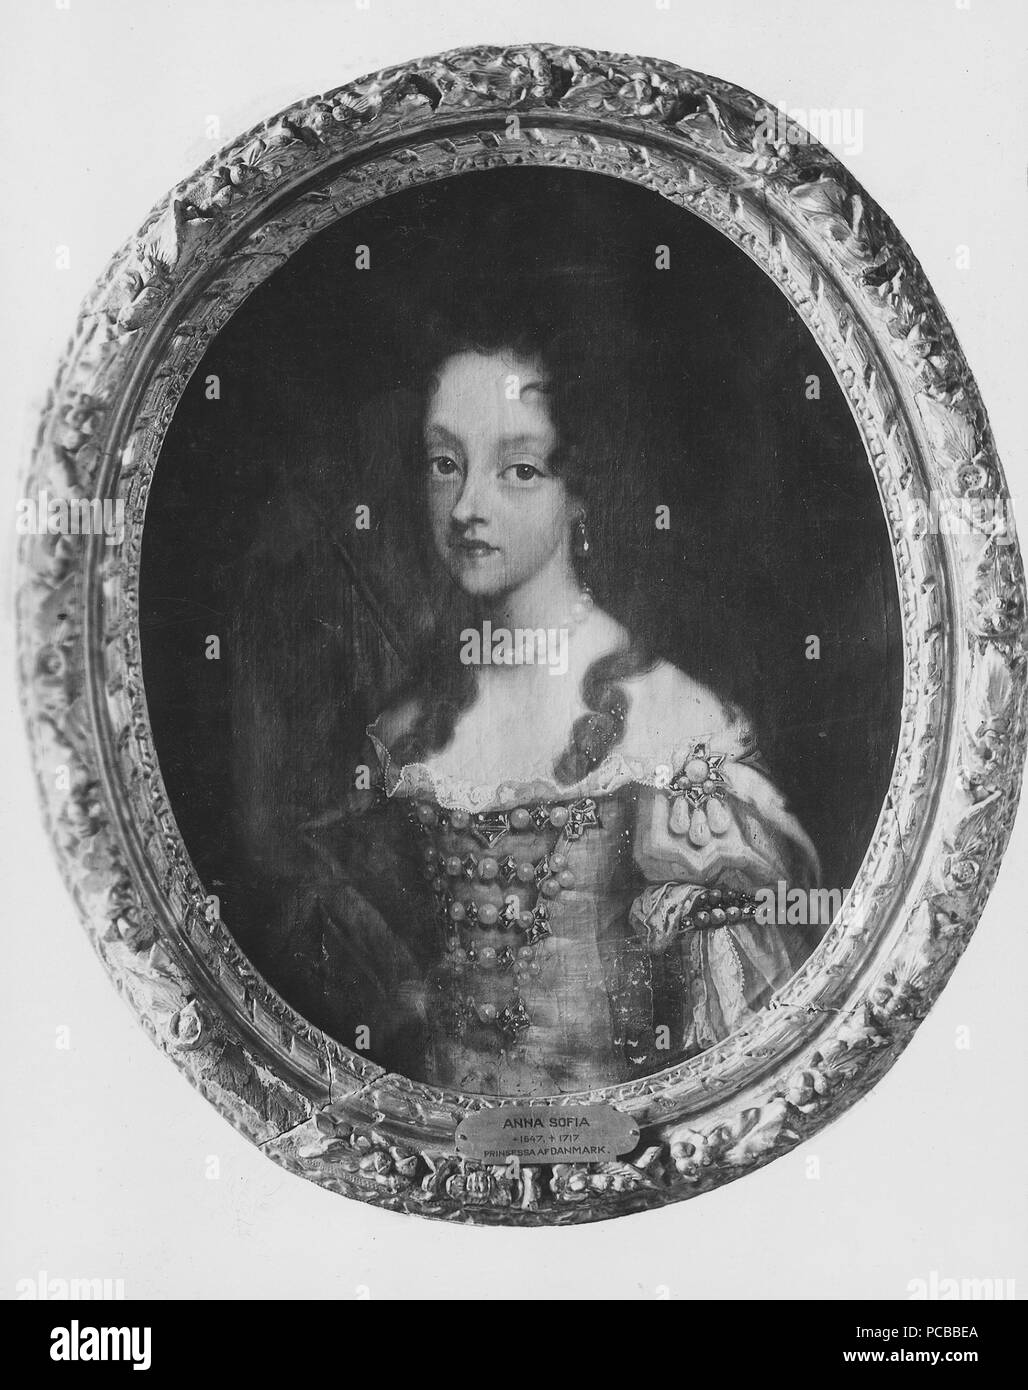 7 Anna Sofia, 1647-1717, kurfurstinna prinsessa Danmark av av Sachsen (Jacques D') Agar - Nationalmuseum - 14987 Banque D'Images